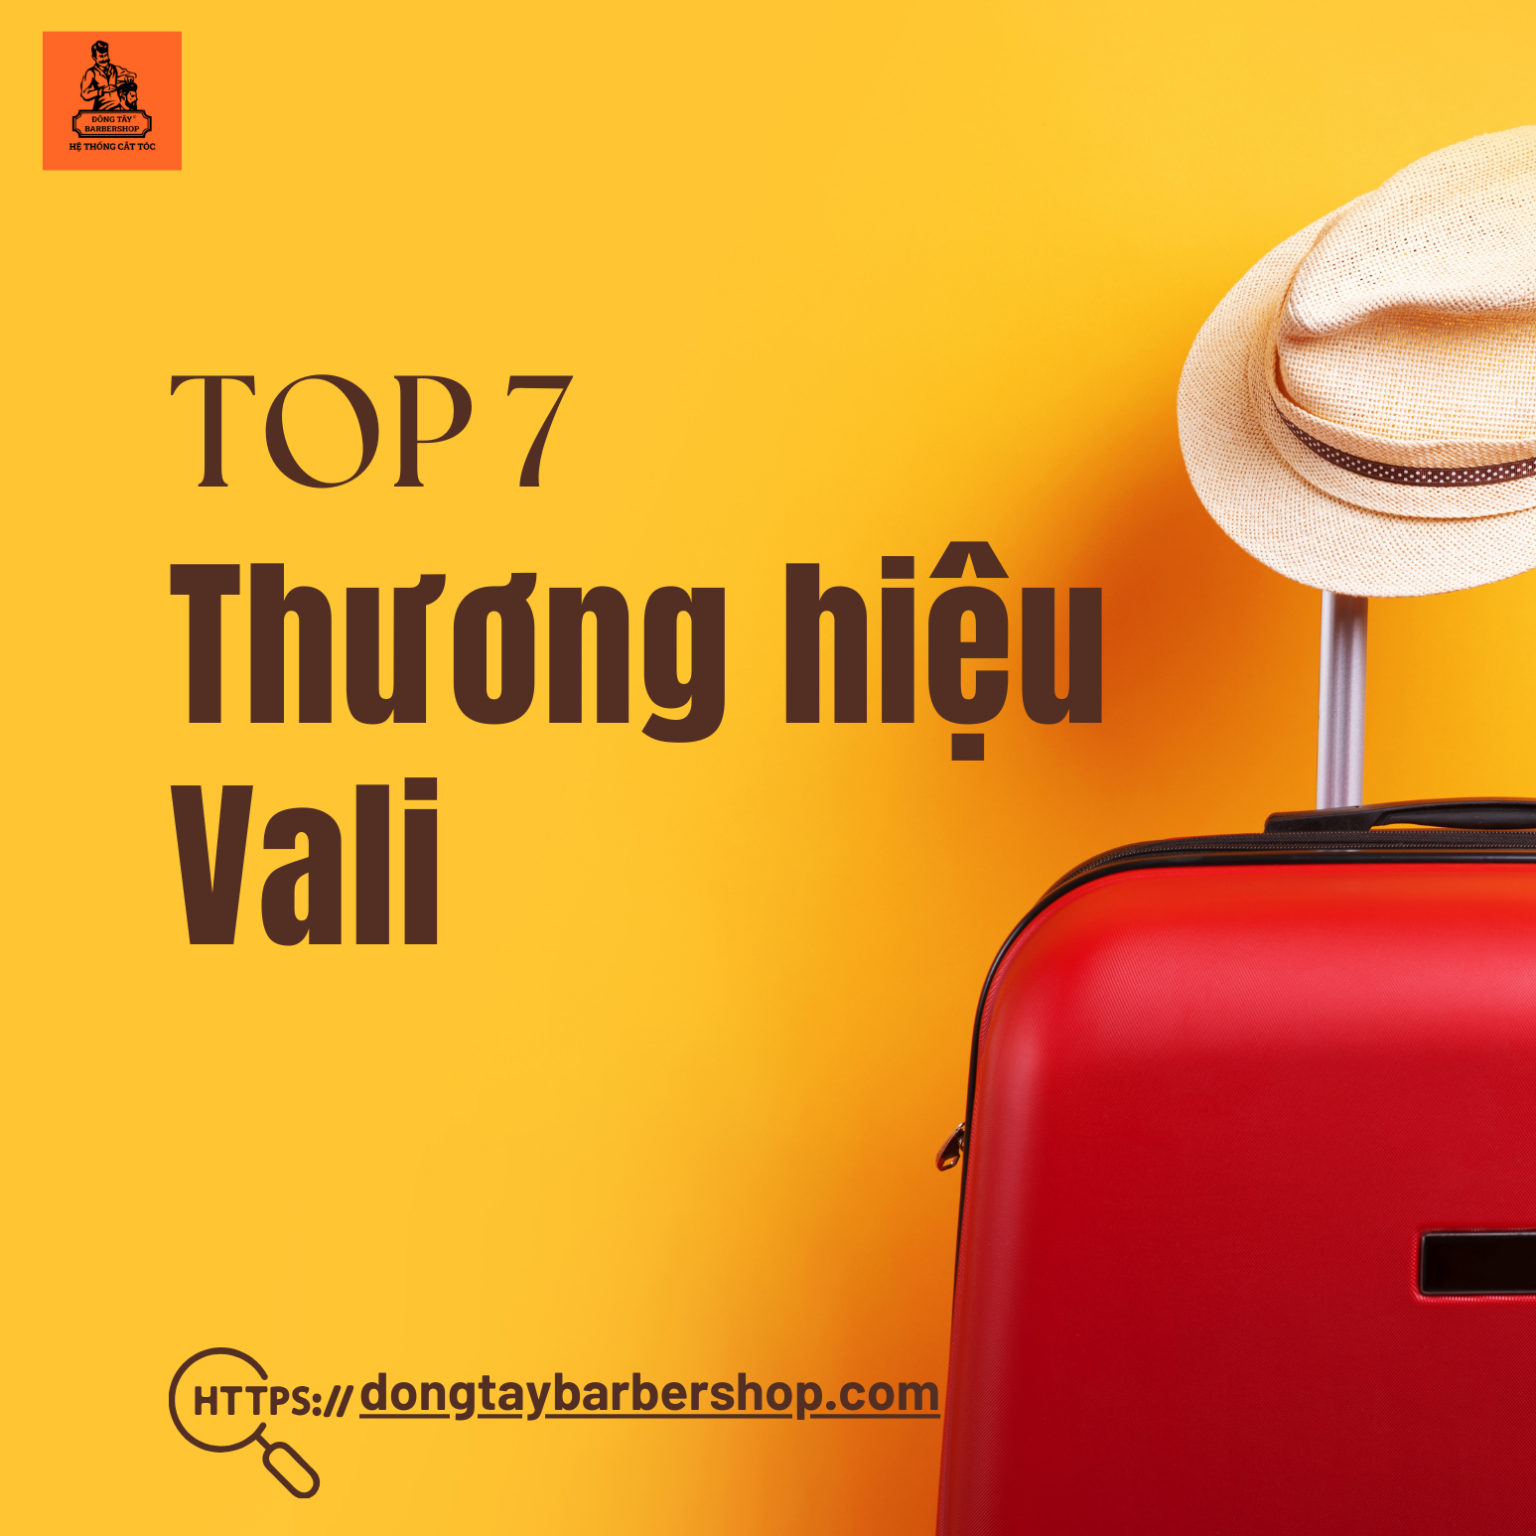 TOP 7 thương hiệu vali được ưa chuộng tại Việt Nam